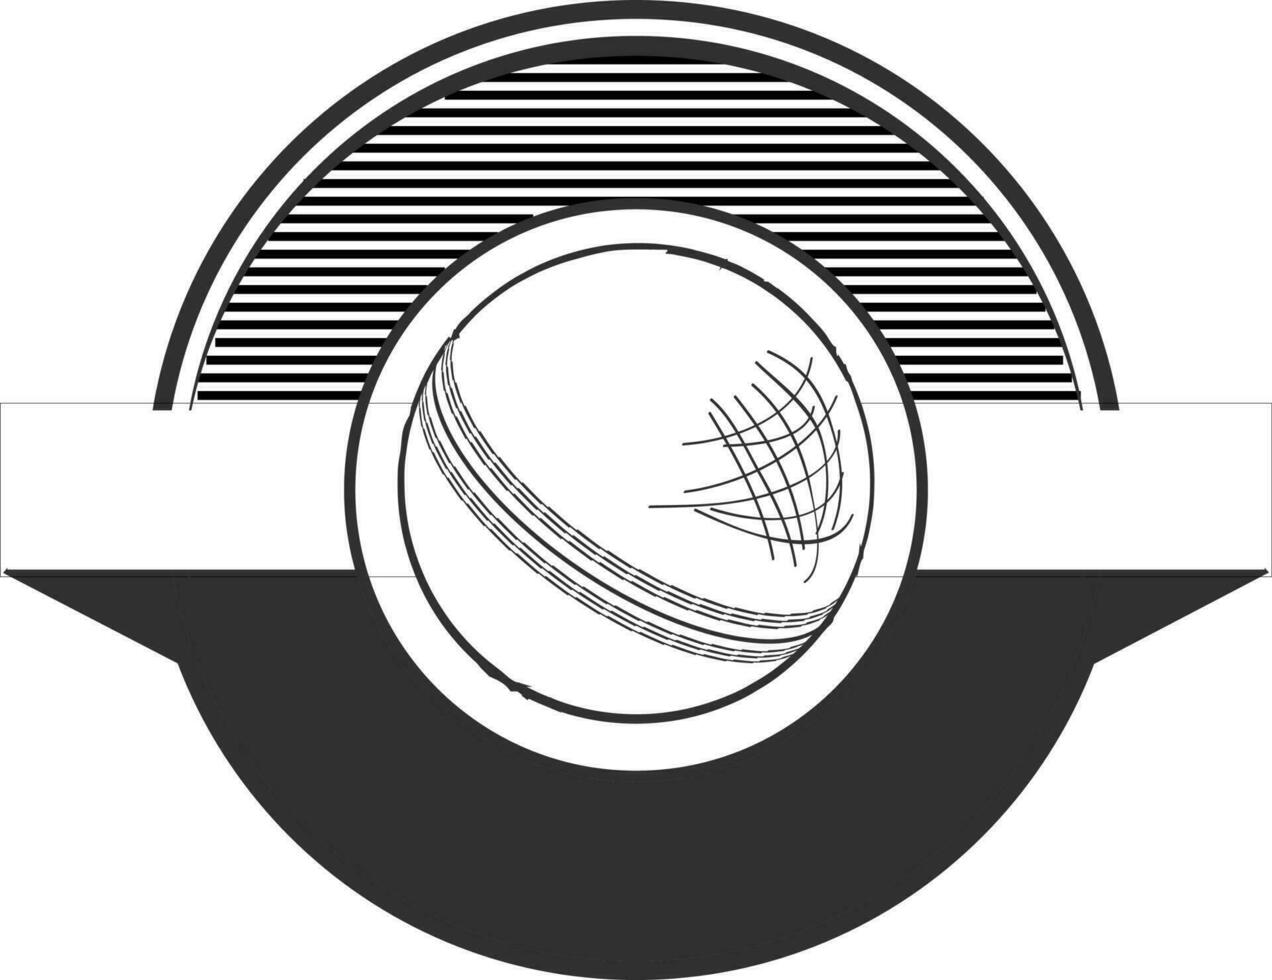 Icon of cricket ball on circular shape frame. vector